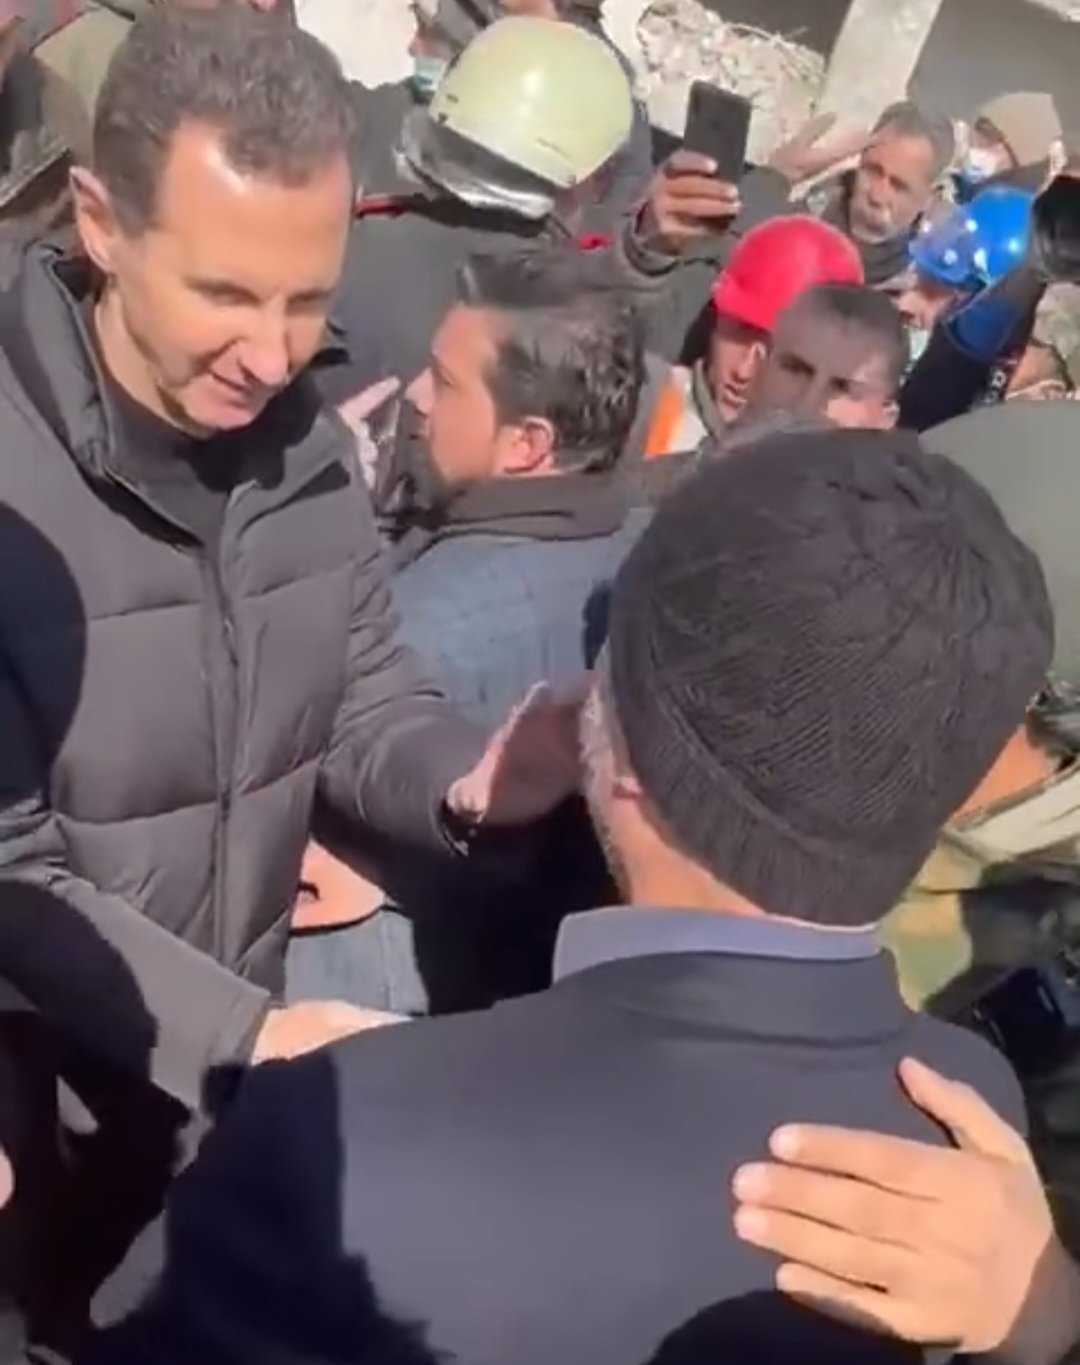 التقى رئيس الحشد الشعبي مع بشار الأسد قبل ساعة من طلبه امرأة سورية منكوبة